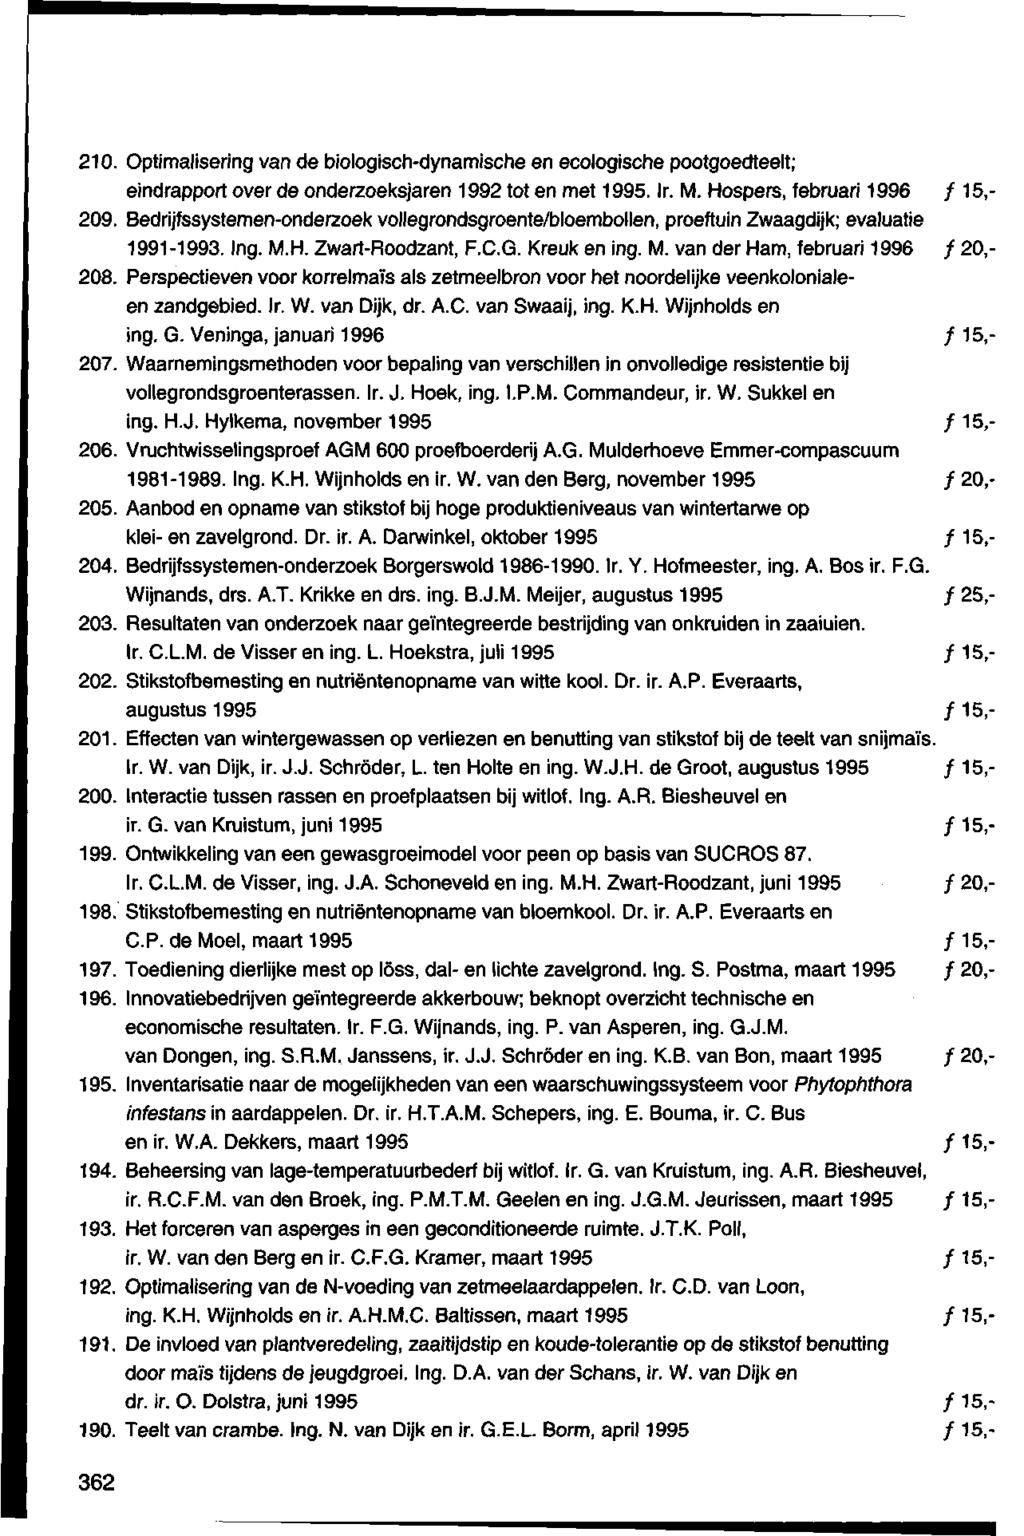 21. Optimalisering van de biologisch-dynamische enecologische pootgoedteelt; eindrapport over de onderzoeksjaren 1992 tot en met 1995. Ir. M. Hospers, februari 1996 ƒ 15,- 29.